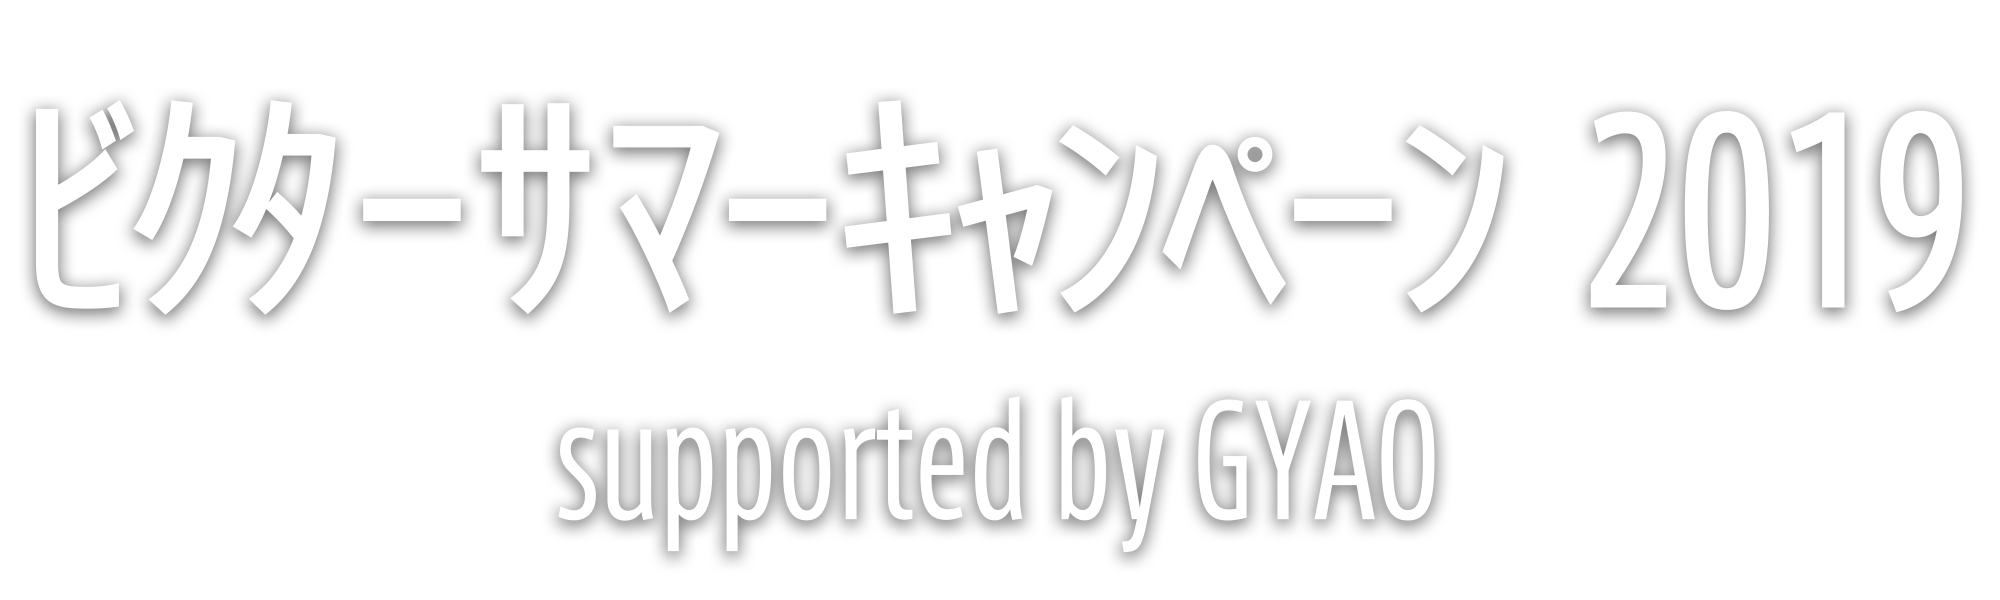 ビクターサマーキャンペーン2019 supported by GYAO